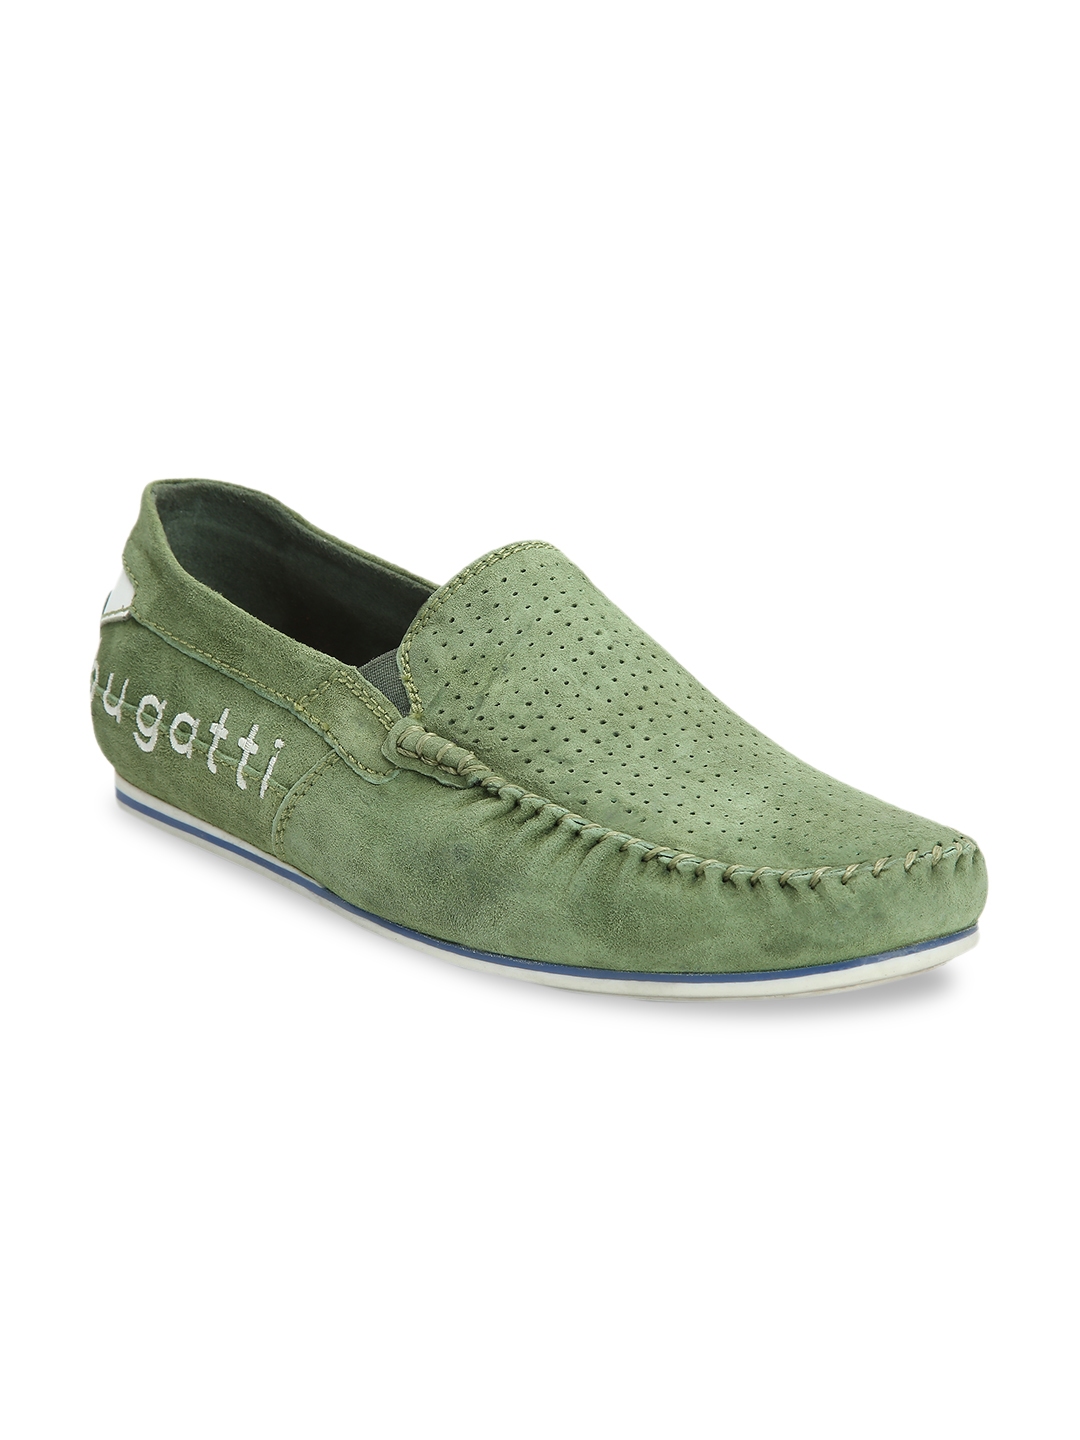 Buy Bugatti Men Green Loafers - Casual 